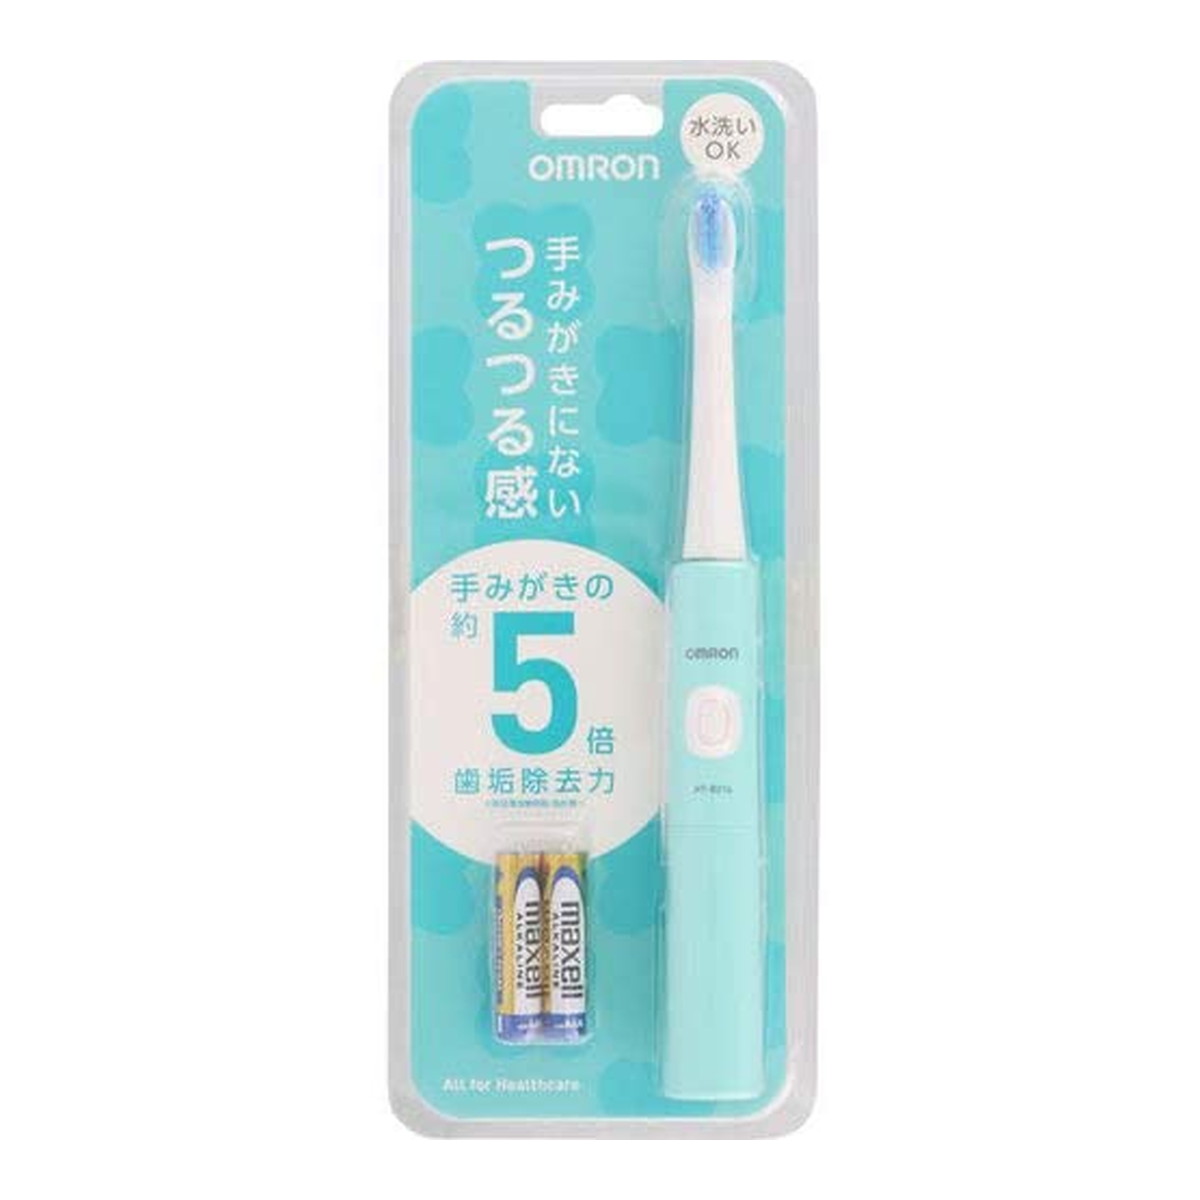 【送料込】オムロン 音波式電動歯ブラシ HT-B214-G 1個